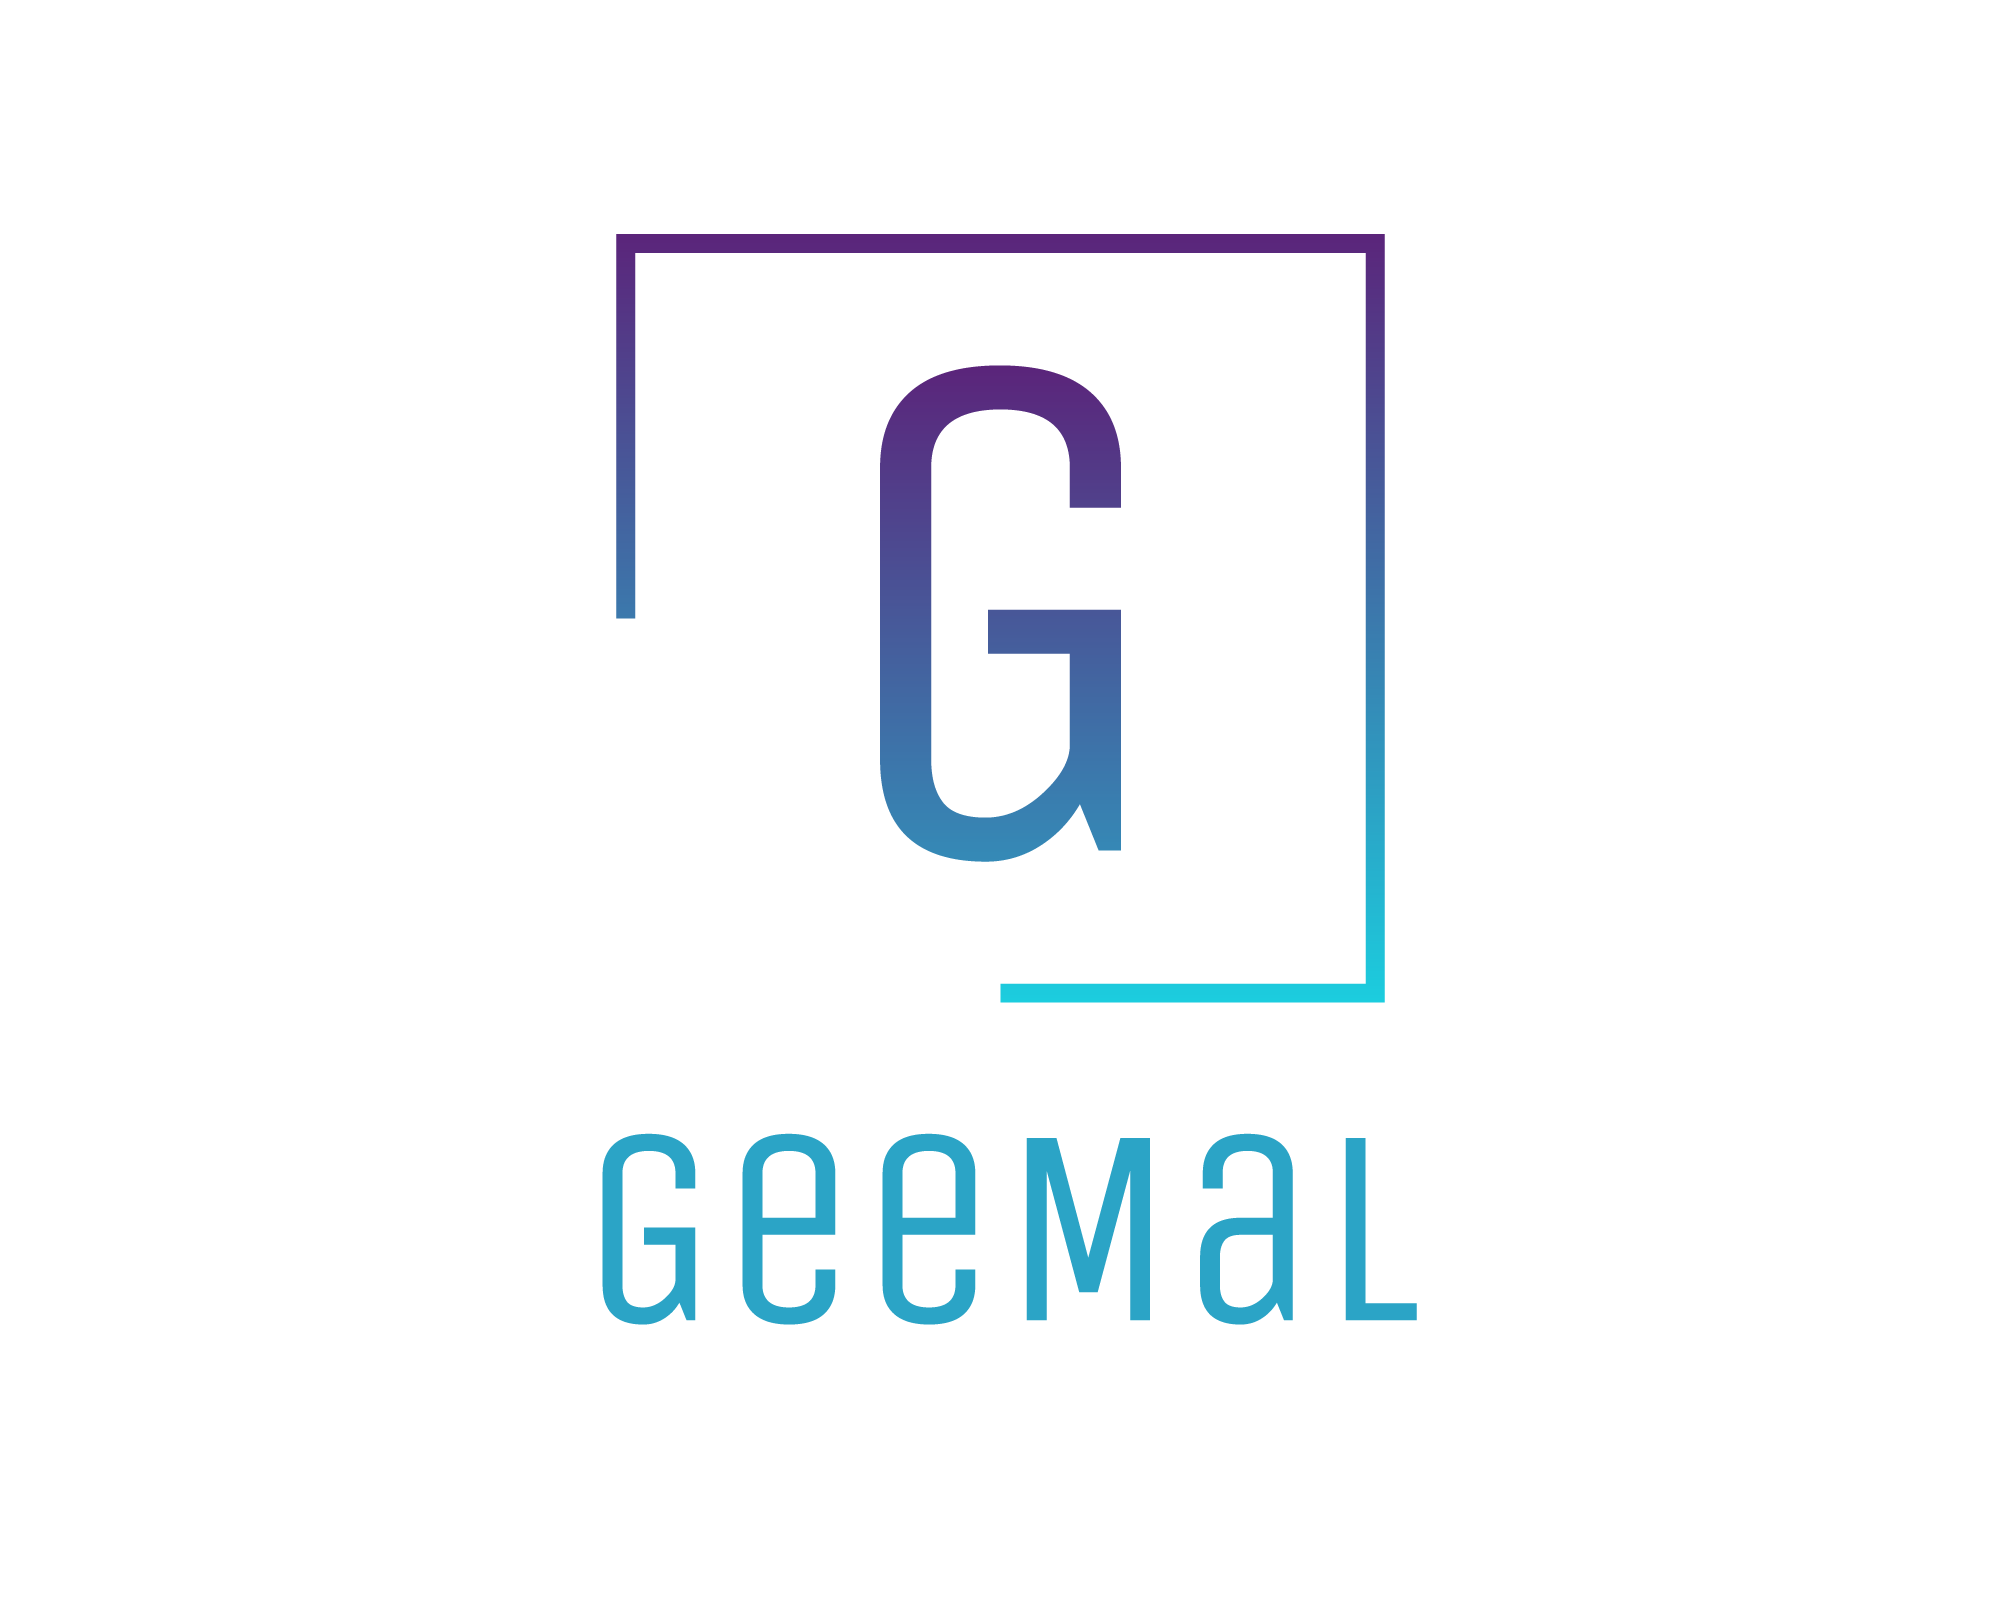 Geemal consultancy